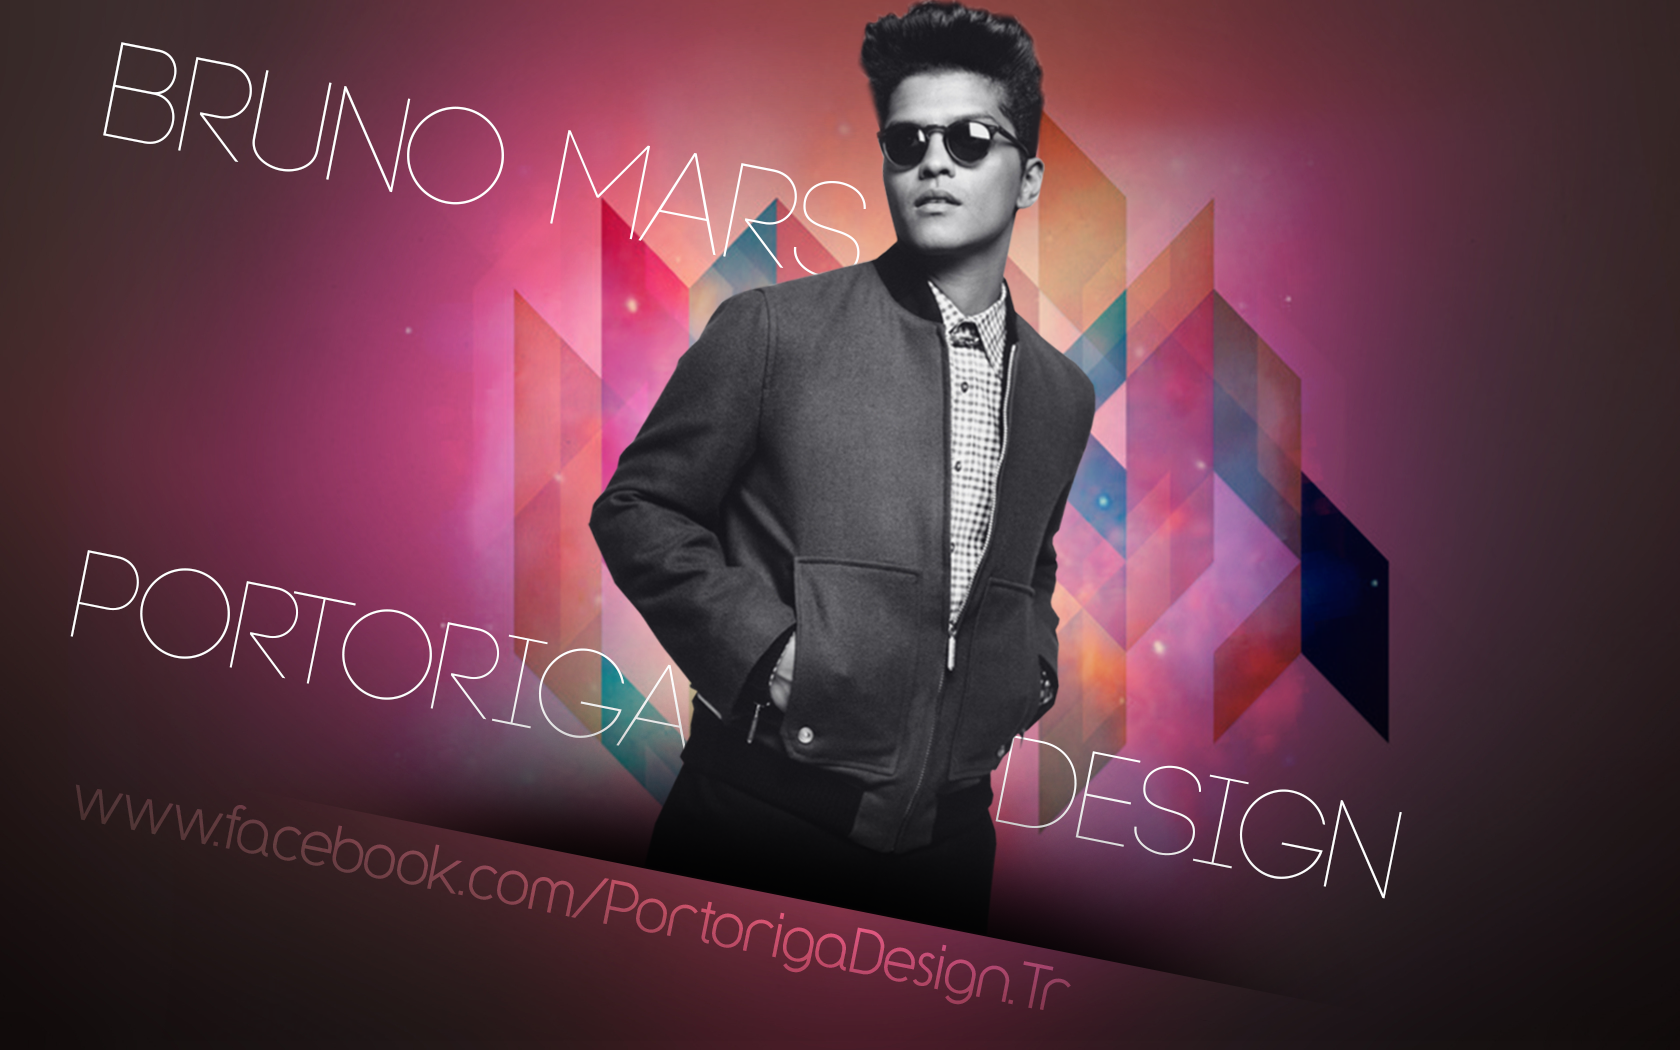 Bruno Mars Wallpaper By Portoriga On Deviantart